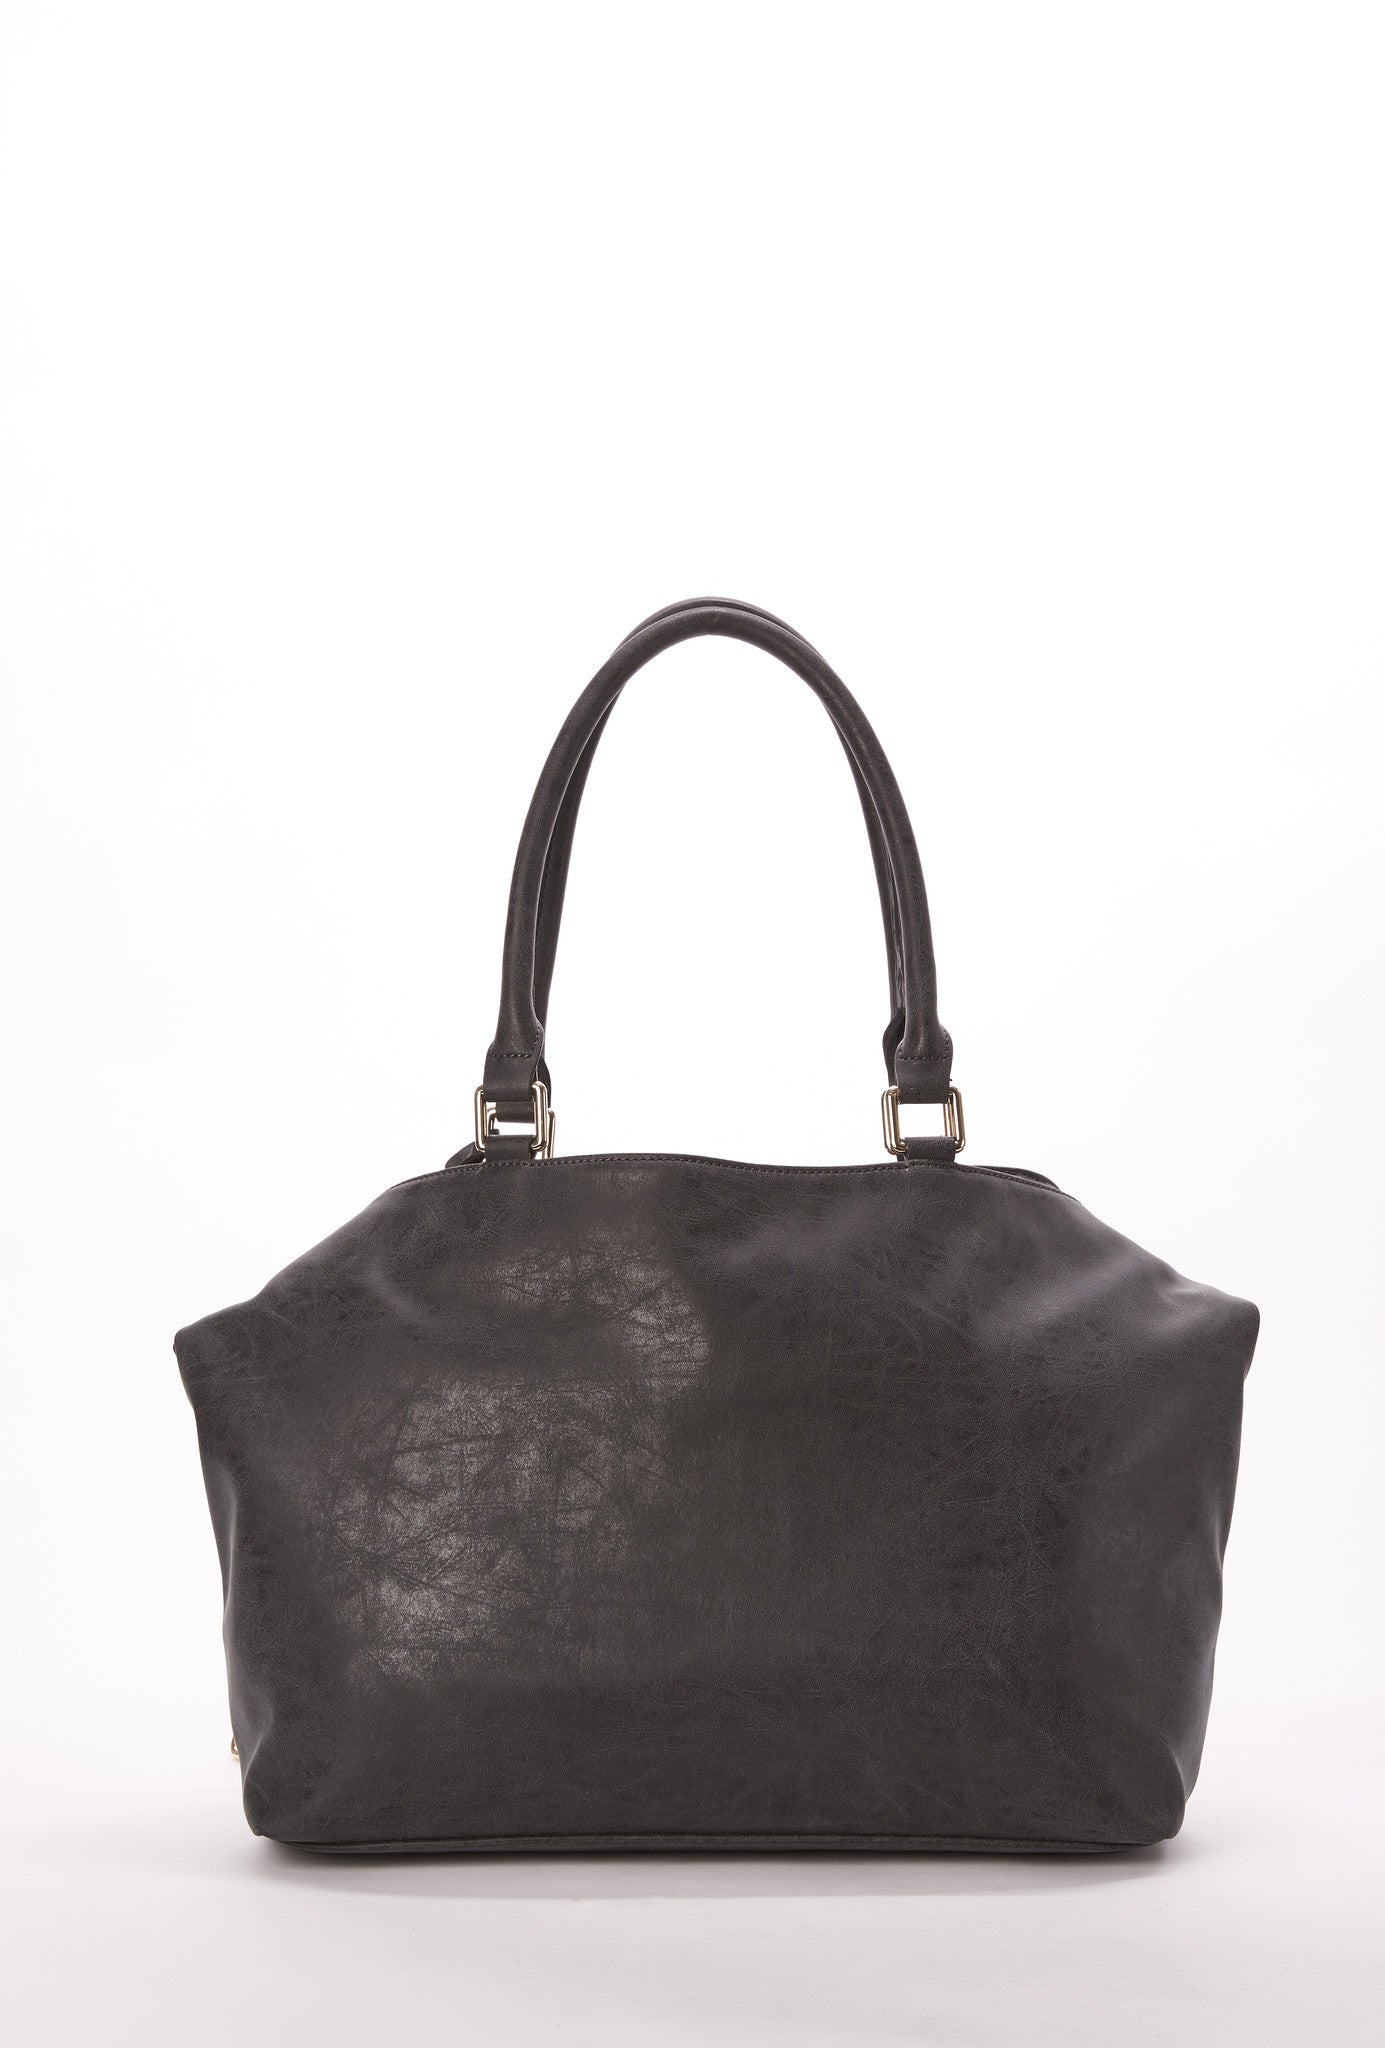 Chase Tote in Black – Dolce Vita Handbags